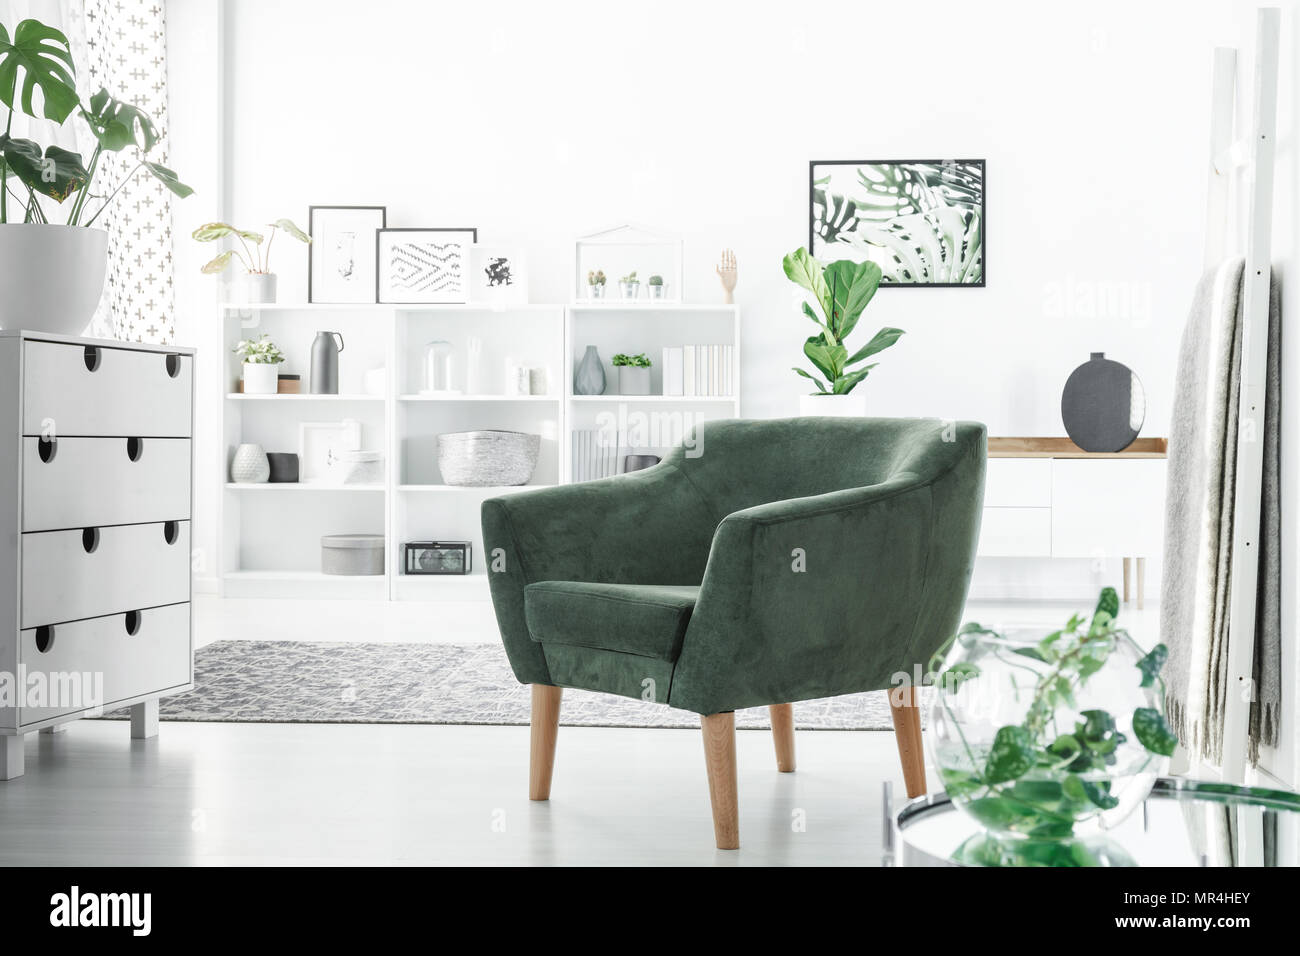 Fauteuil vert en blanc intérieur chambre avec un placard, décorations sur des étagères et des plantes Banque D'Images